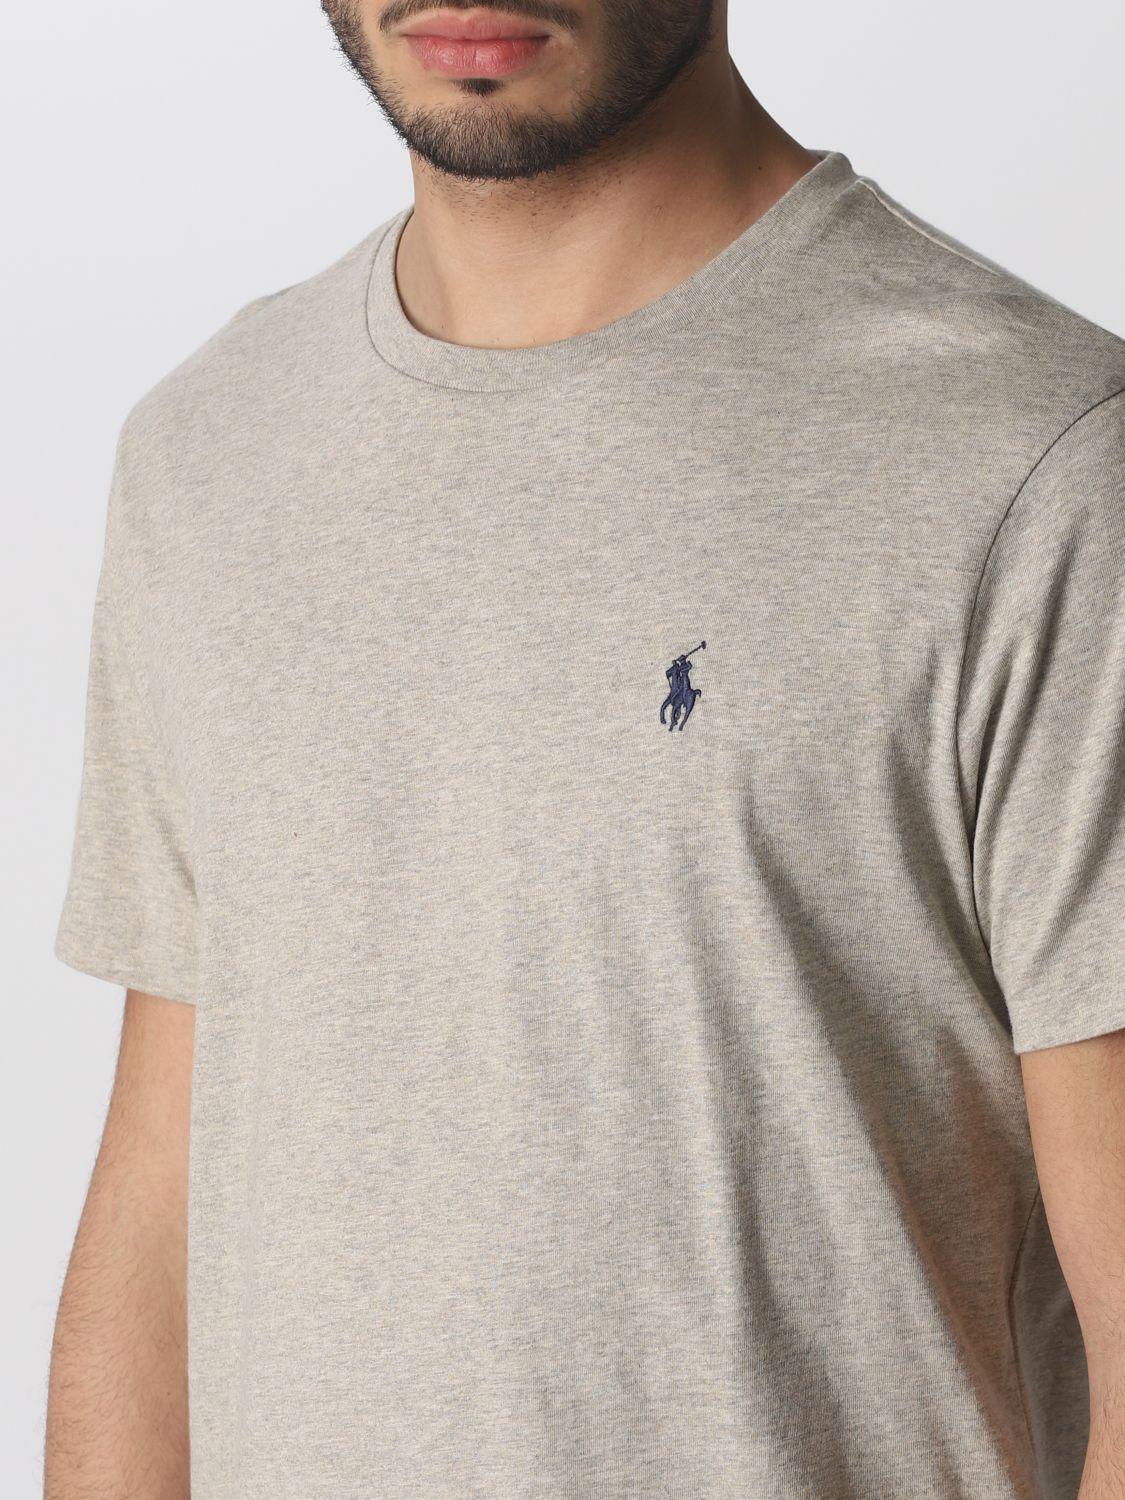 POLO RALPH LAUREN: T-shirt men | T-Shirt Polo Ralph Lauren Men White ...